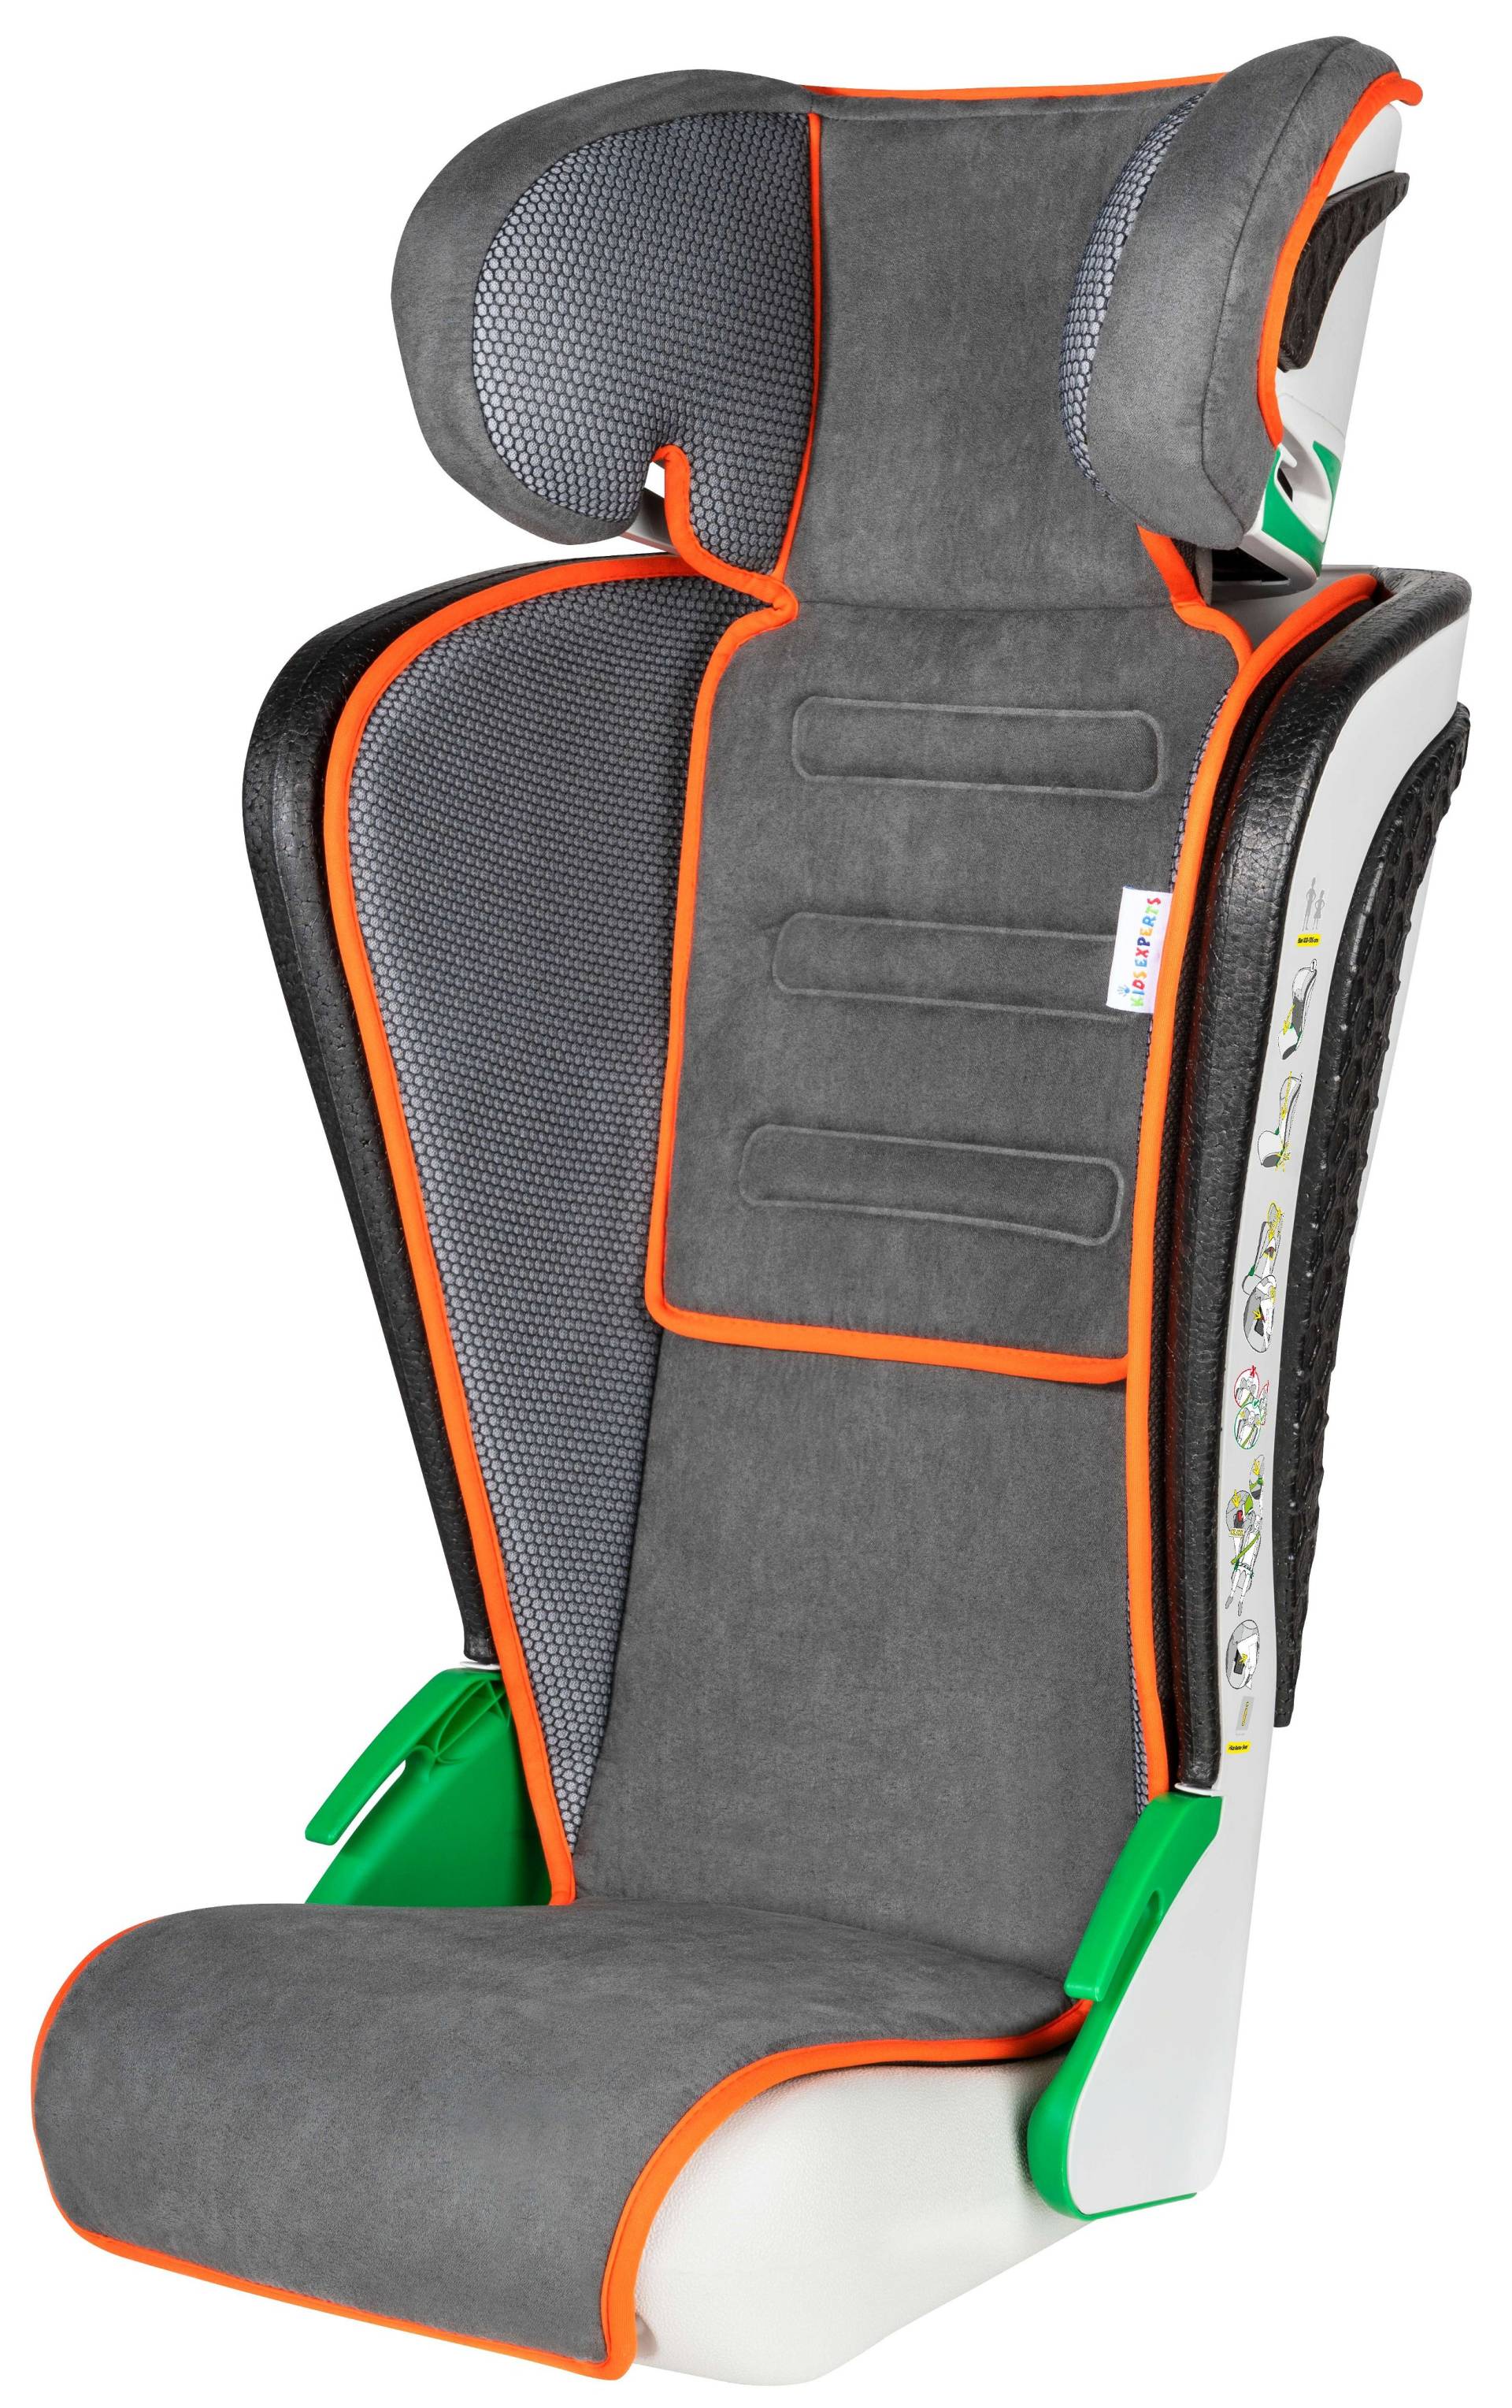 Kindersitz Noemi, klappbarer Auto-Kindersitz ECE R129 geprüft Anthrazit/Orange von WALSER